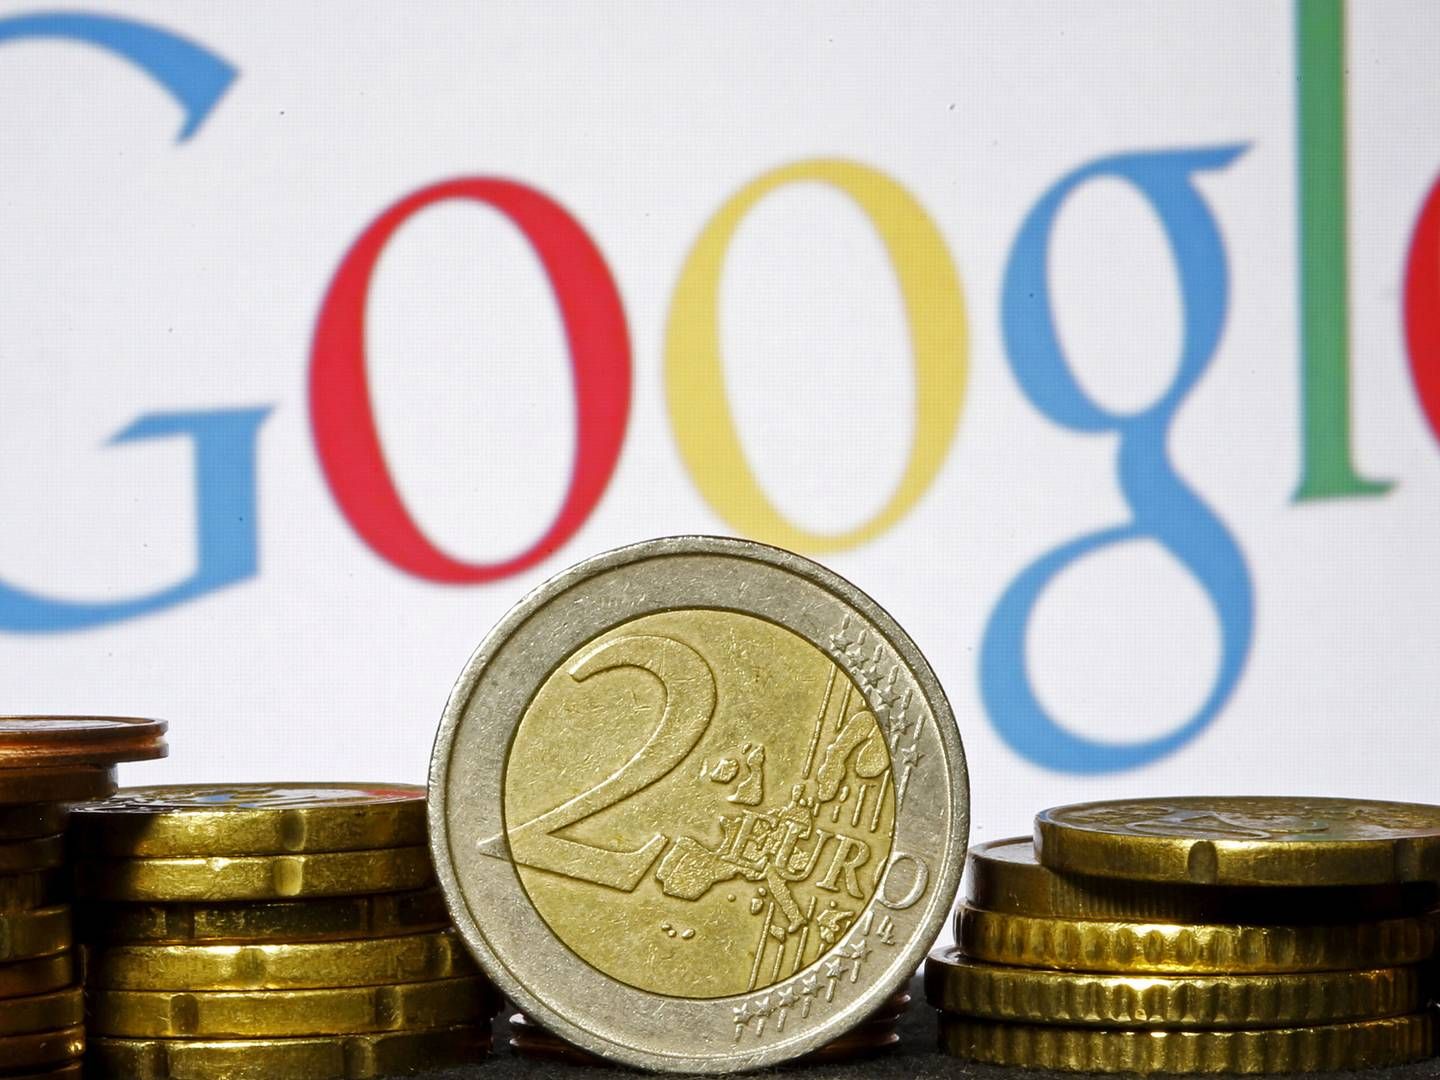 Google er formentlig på vej til at modtage en milliardbøde, oplyser EU-Domstolen torsdag i en pressemeddelelse. | Foto: Dado Ruvic/Reuters/Ritzau Scanpix